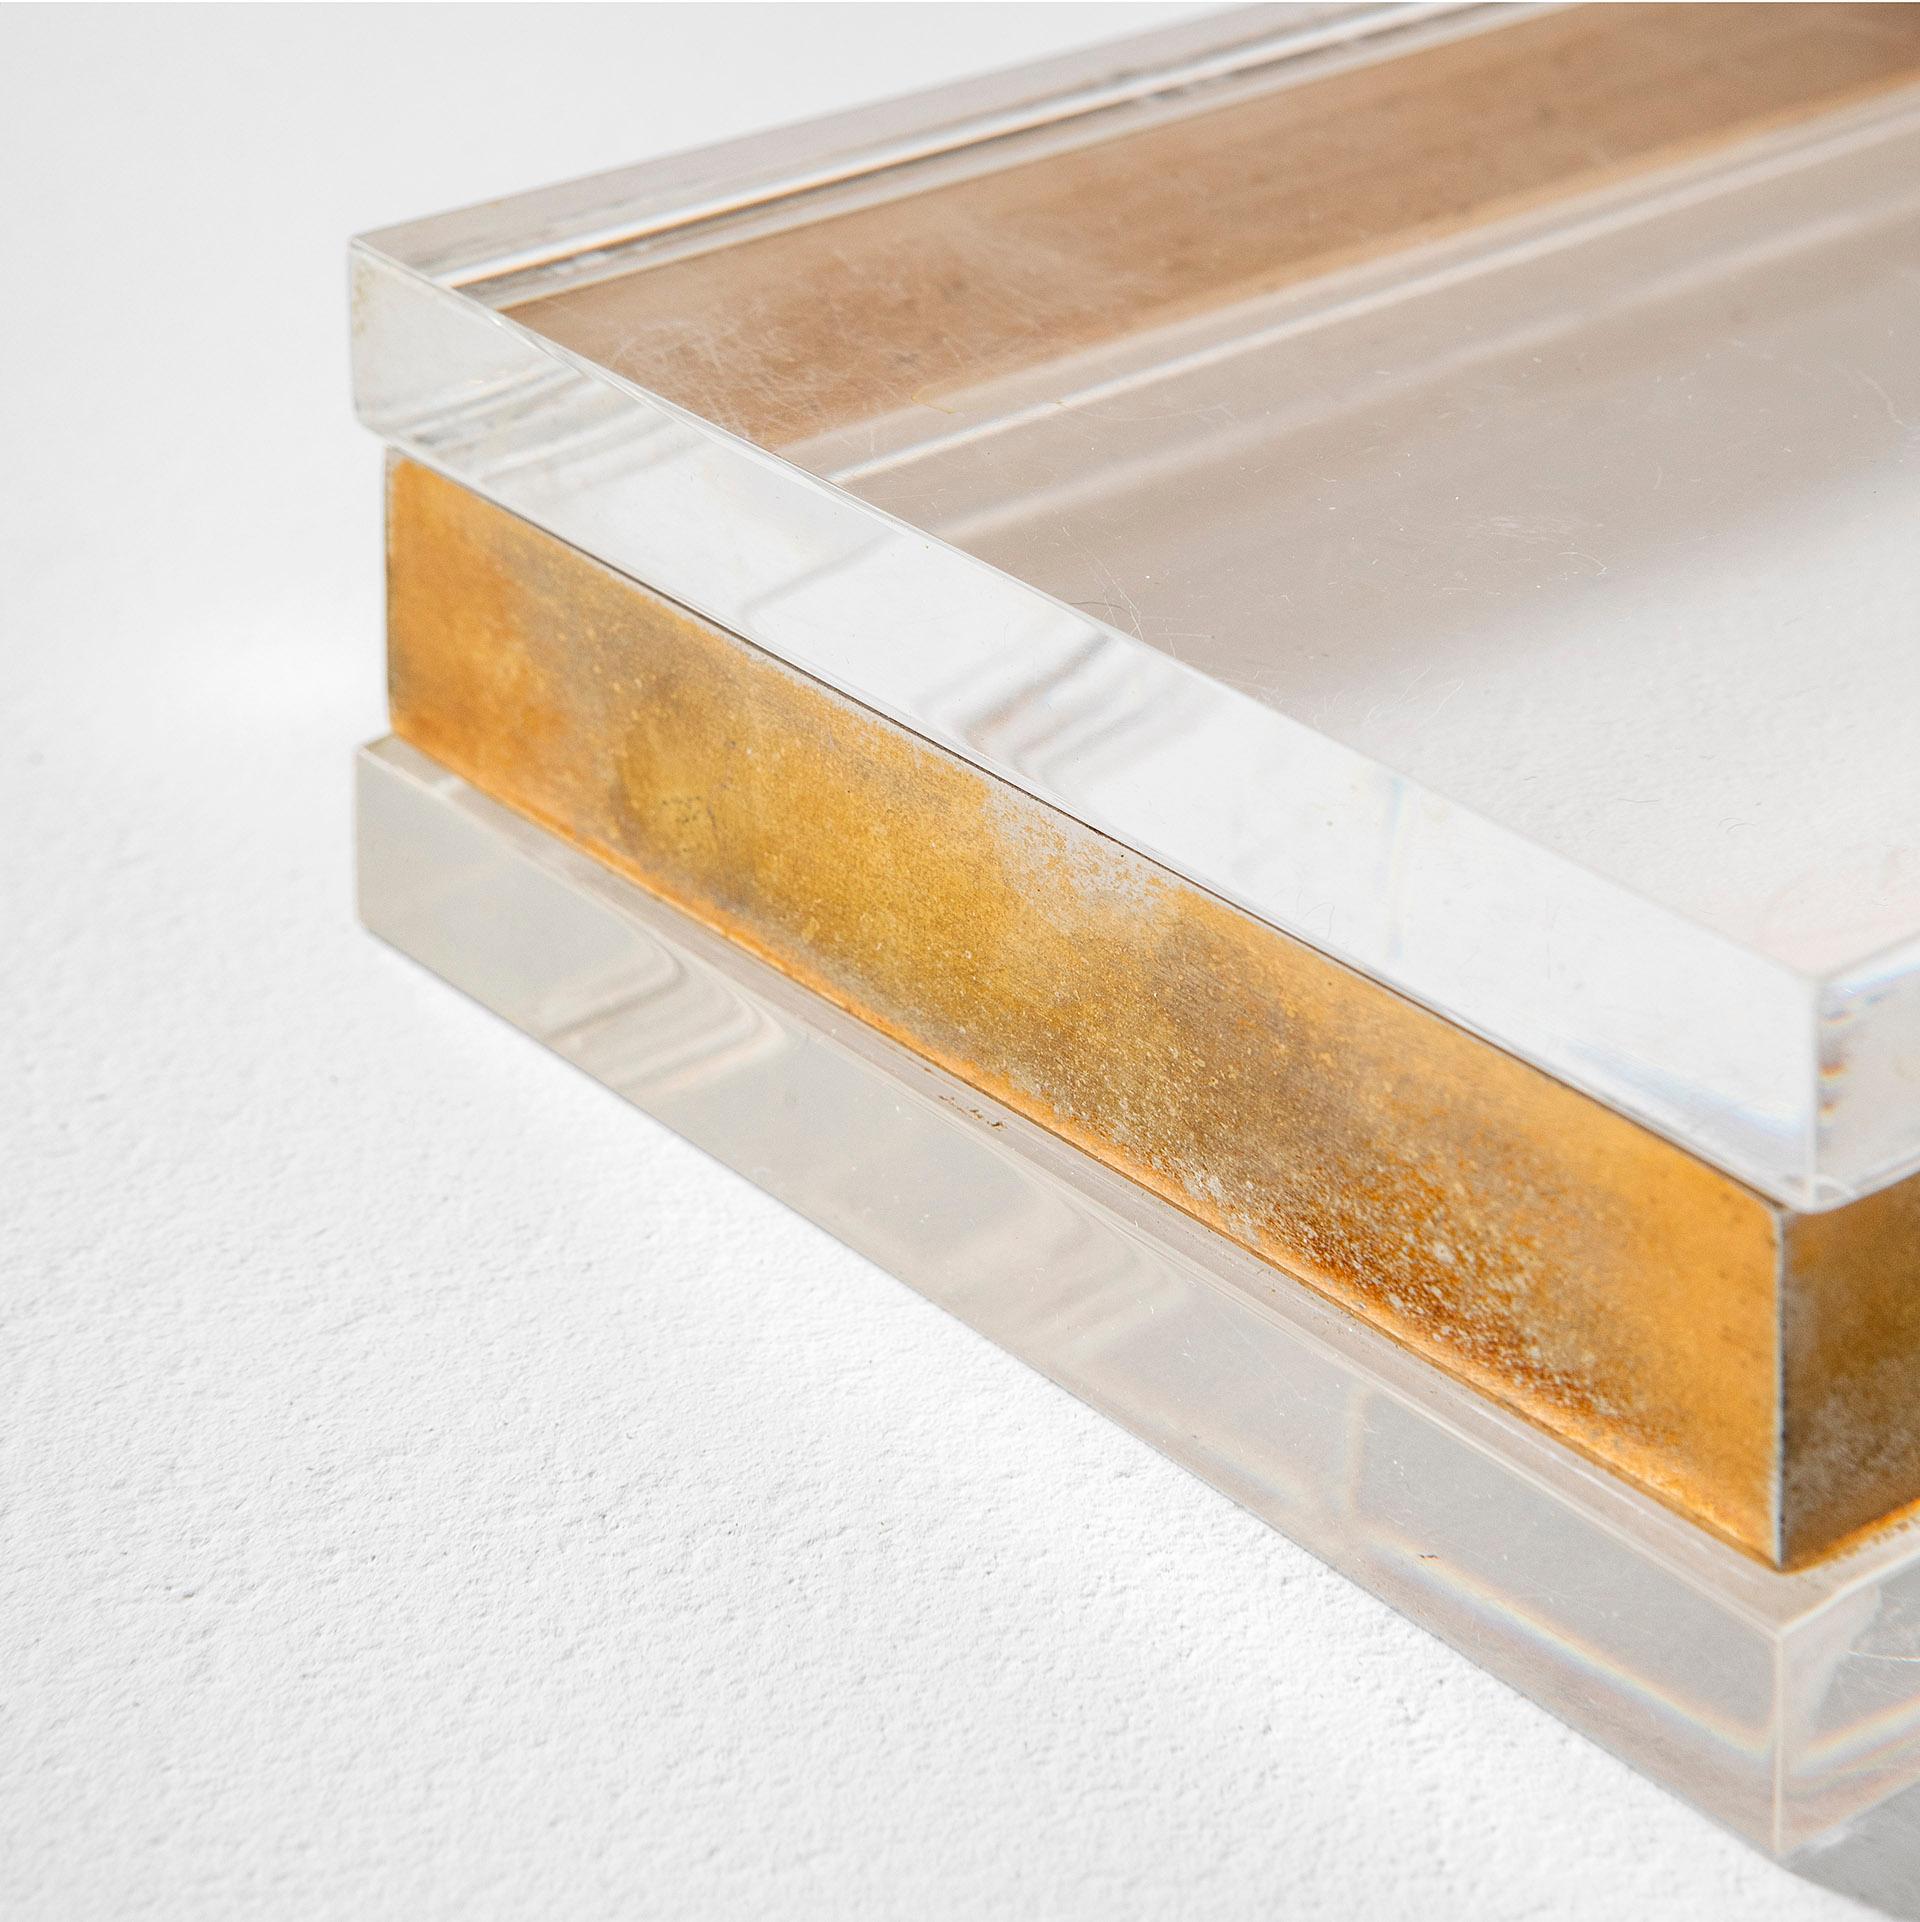 20th Century Gabriella Crespi Decorative Box in Brass and Plexiglass '70s For Sale 1